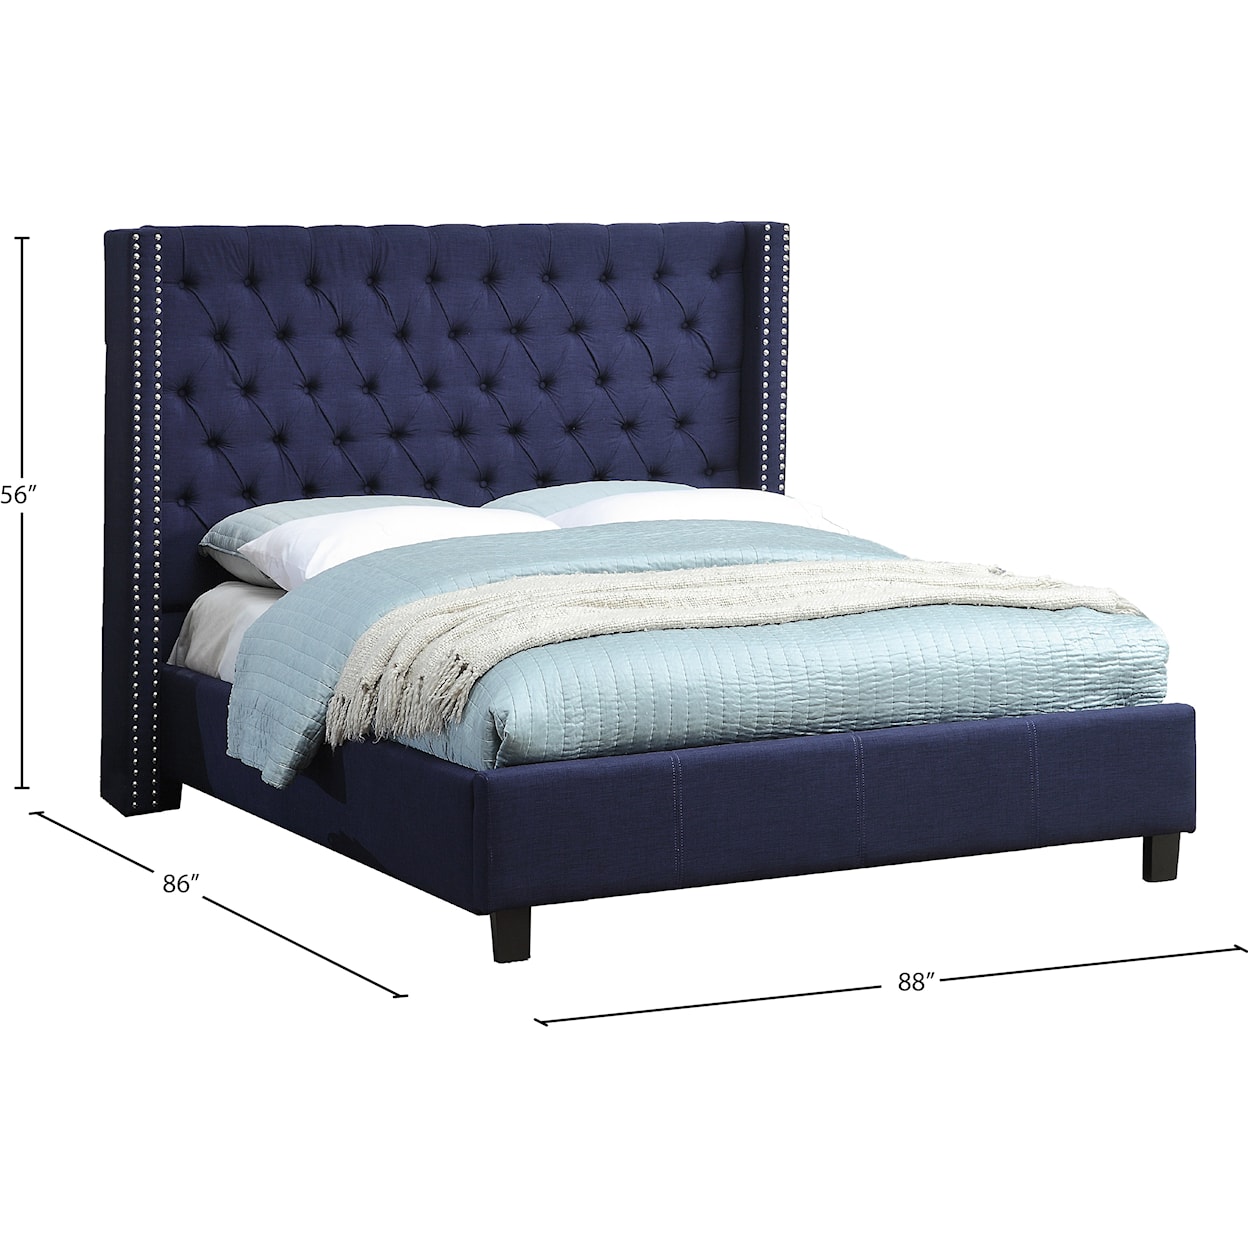 Meridian Furniture Ashton King Bed